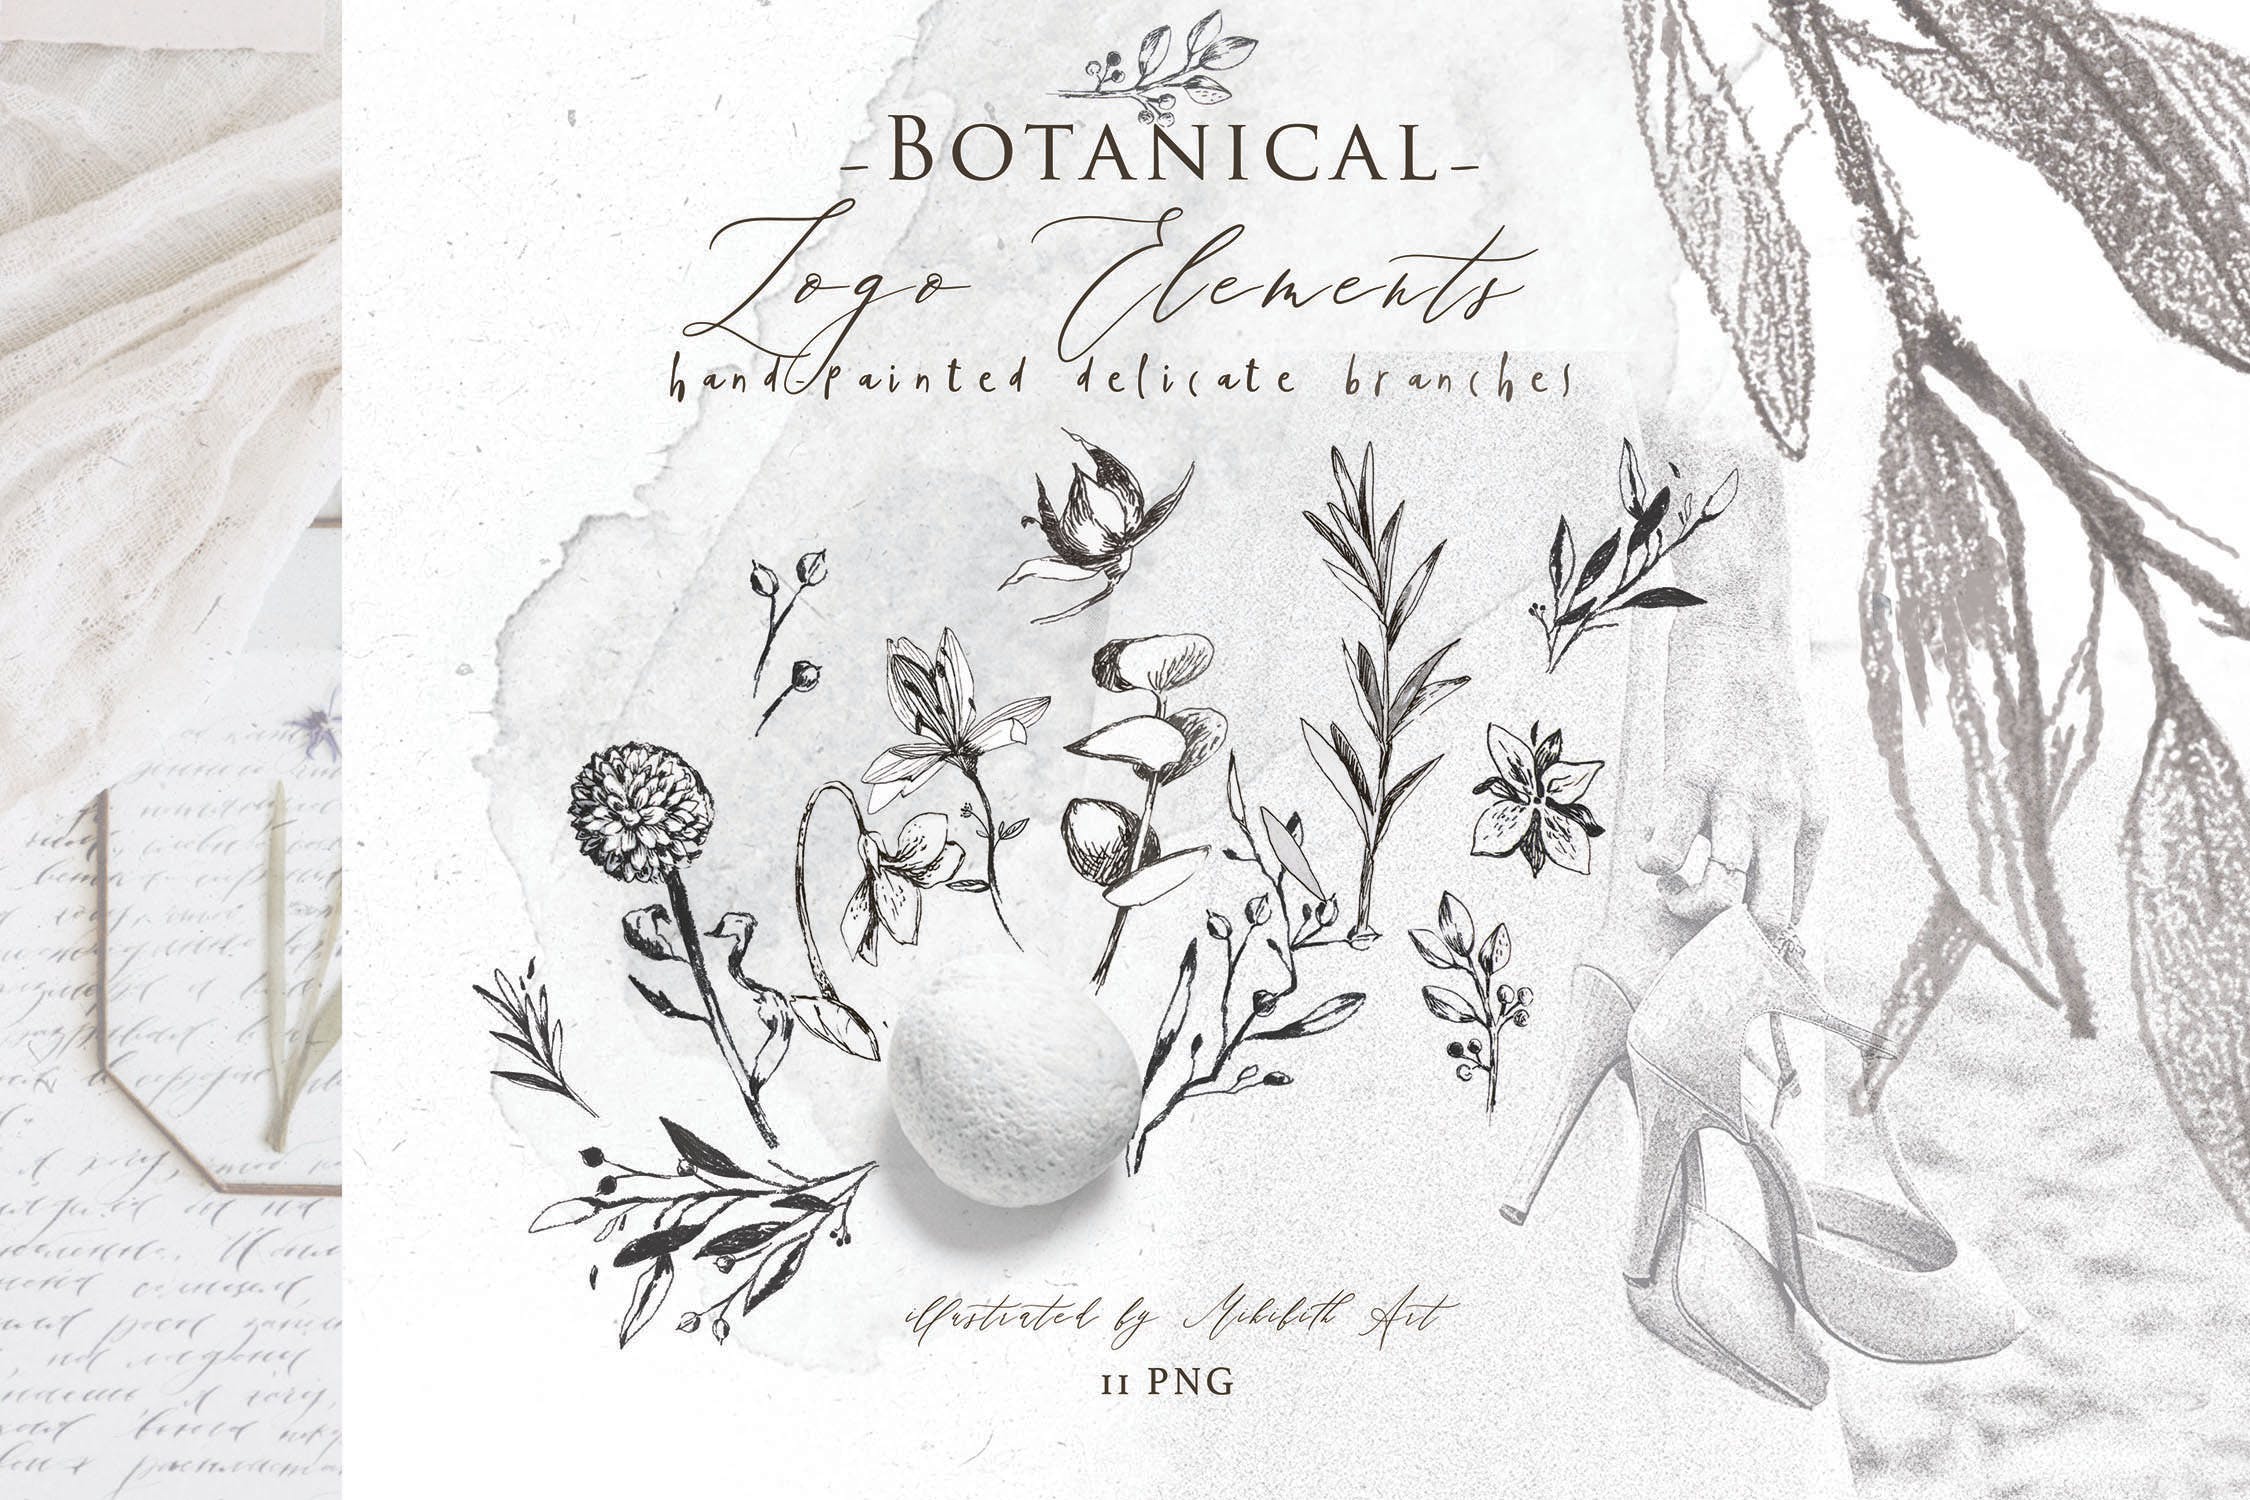 优雅风格植物Logo标志元素设计素材v3 BOTANICAL LOGO ELEMENTS vol.3插图(4)